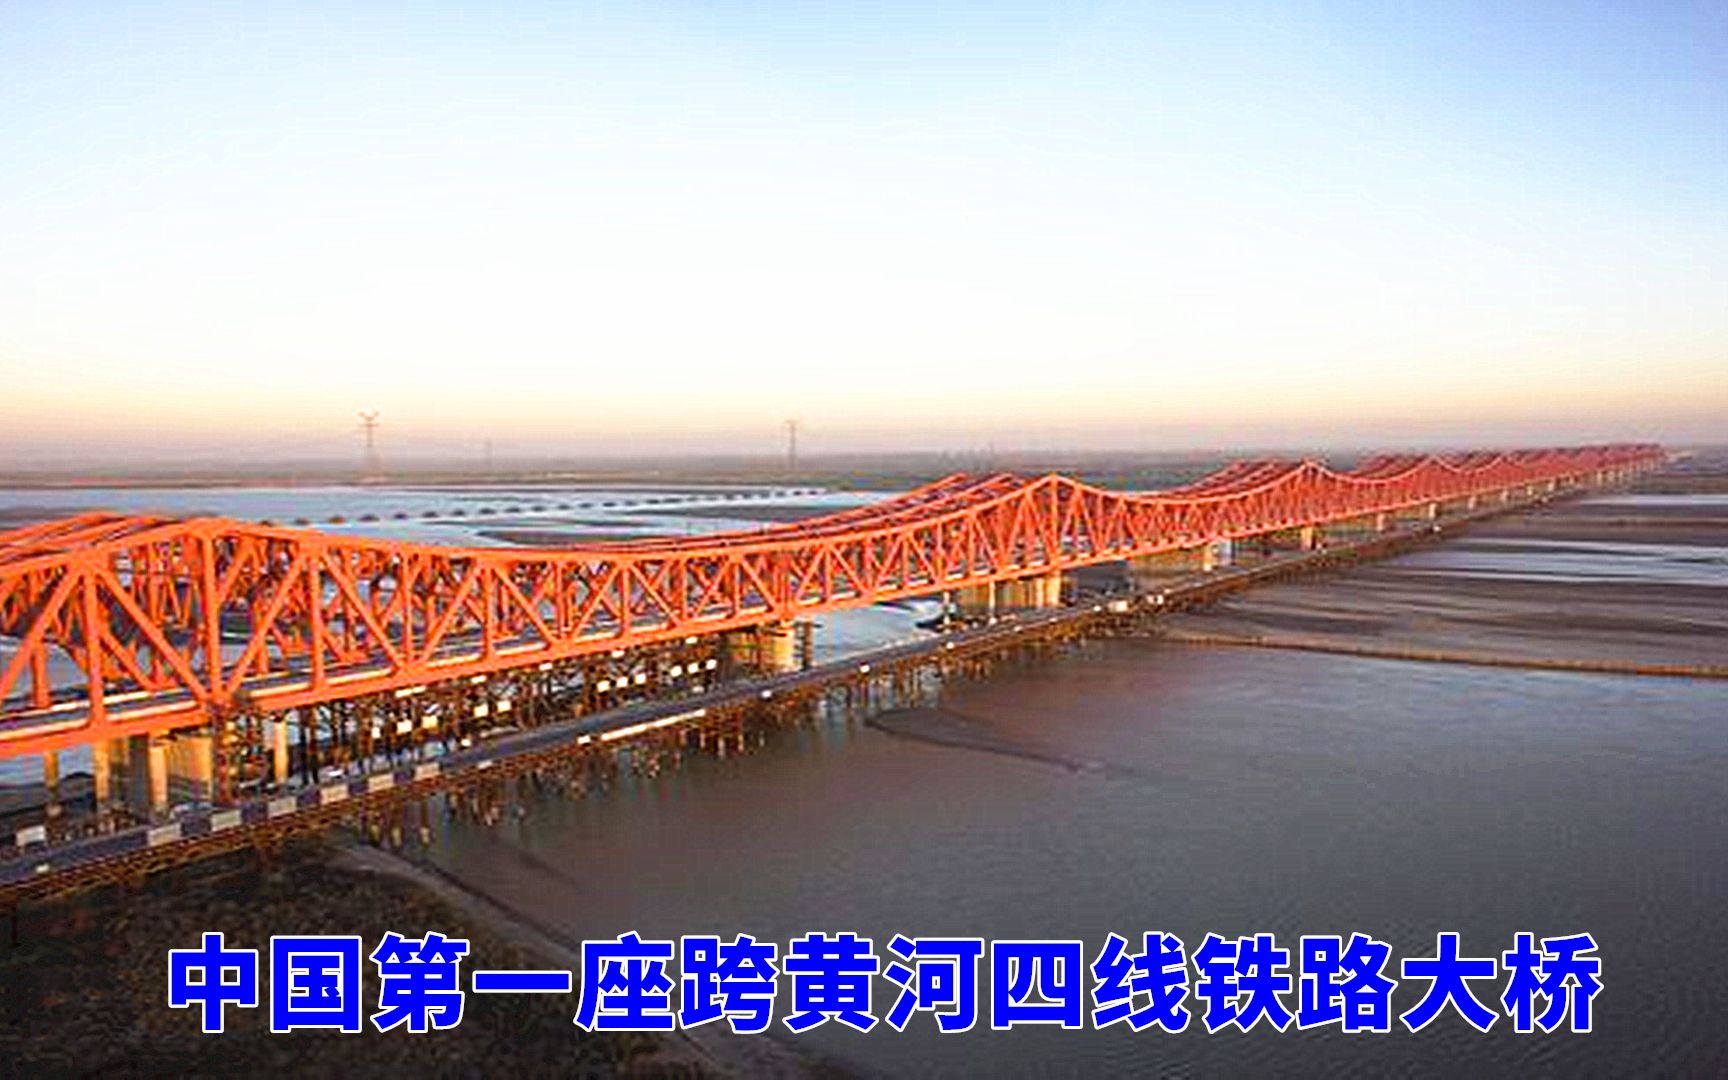 河南郑州,中国首座跨黄河四线铁路大桥屹立黄河,太壮观了